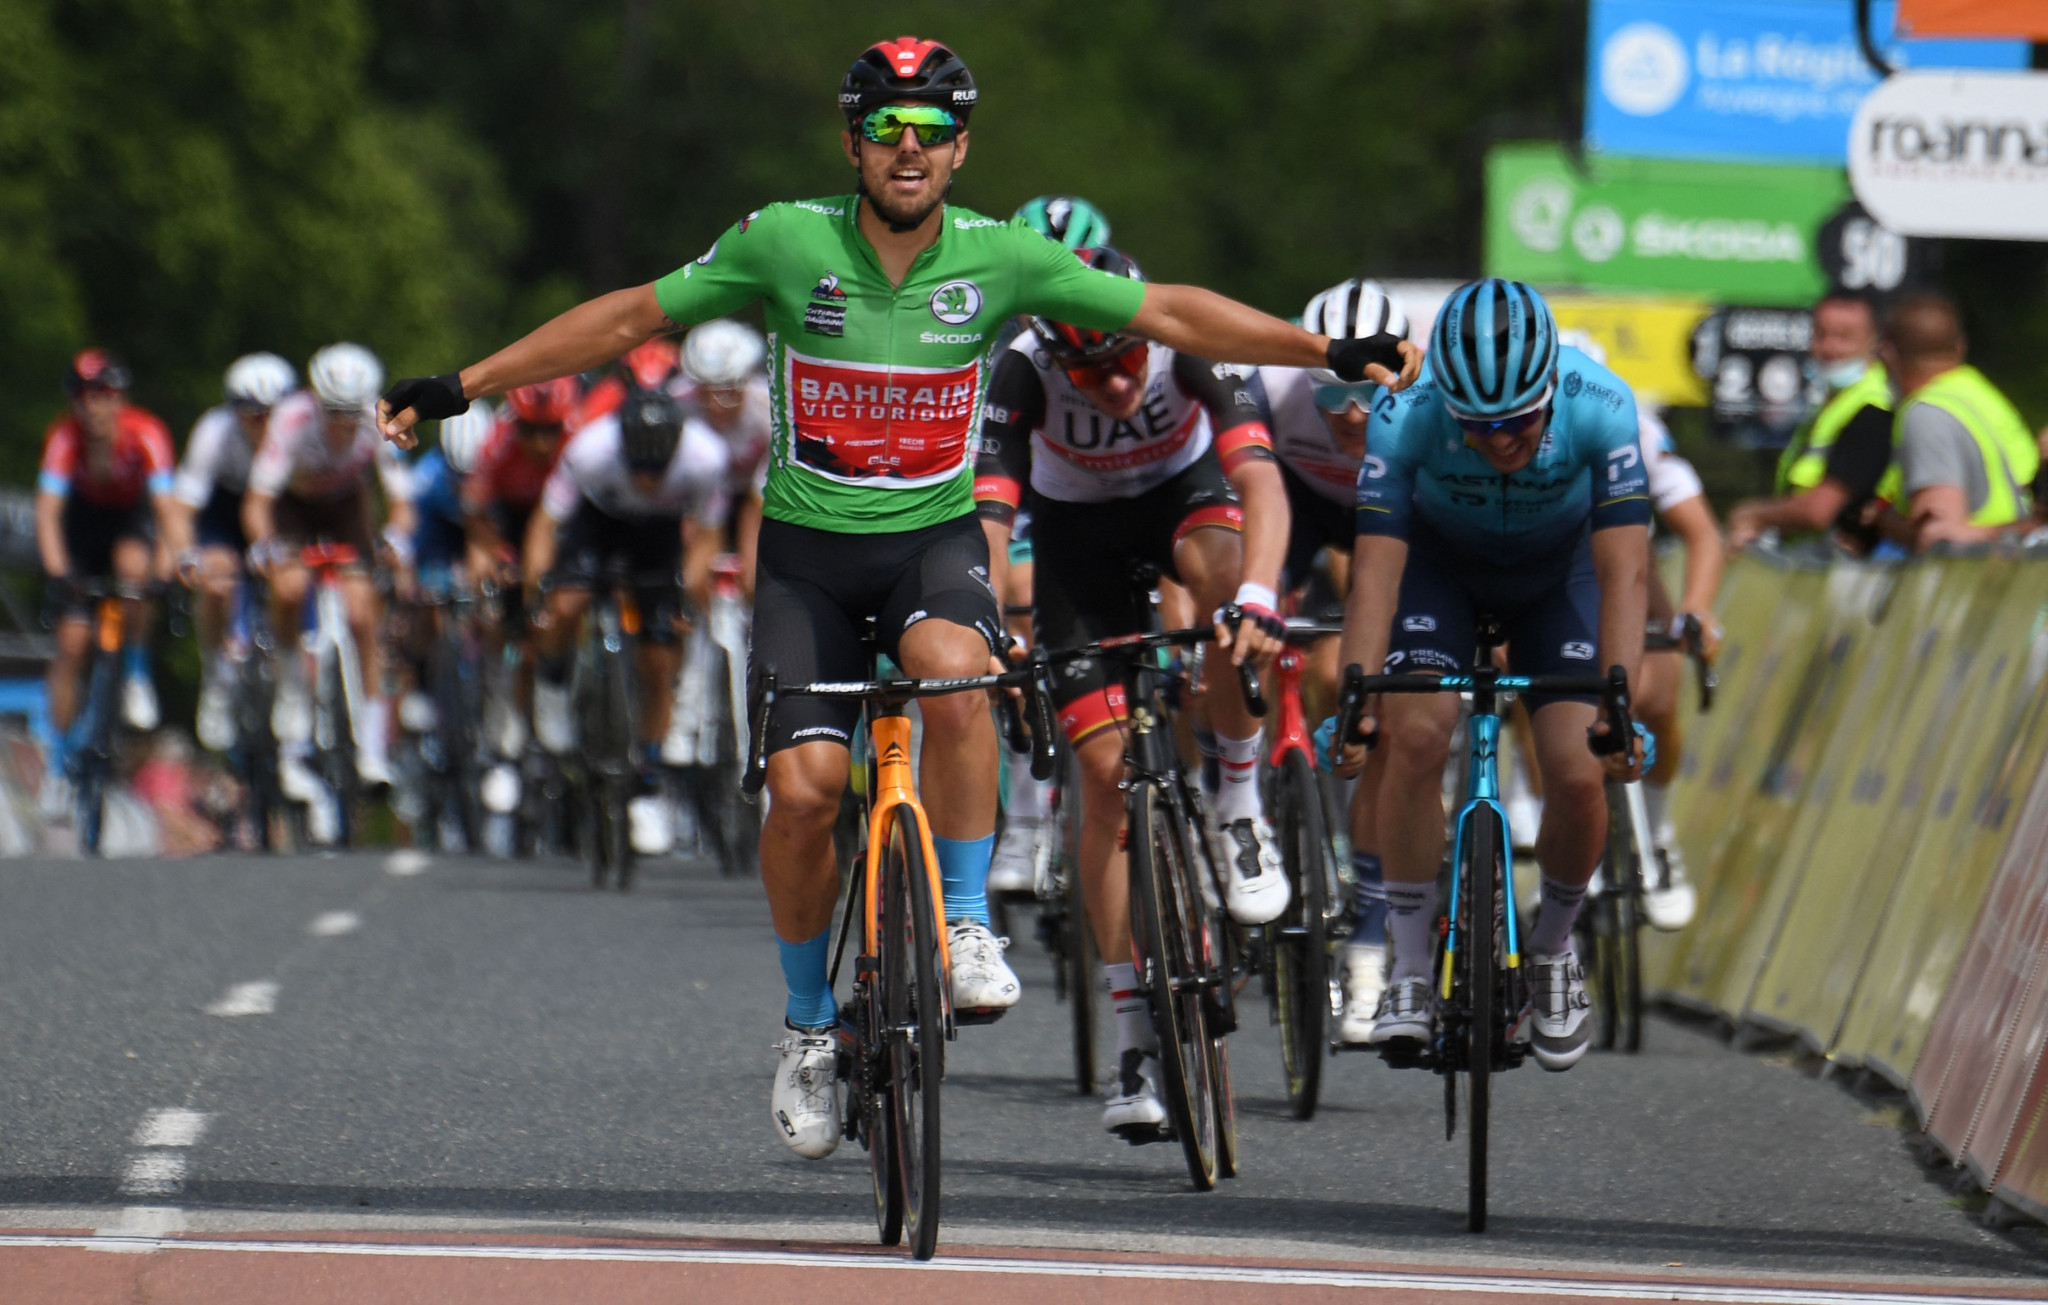 Colbrelli wins Critérium du Dauphiné stage at third attempt